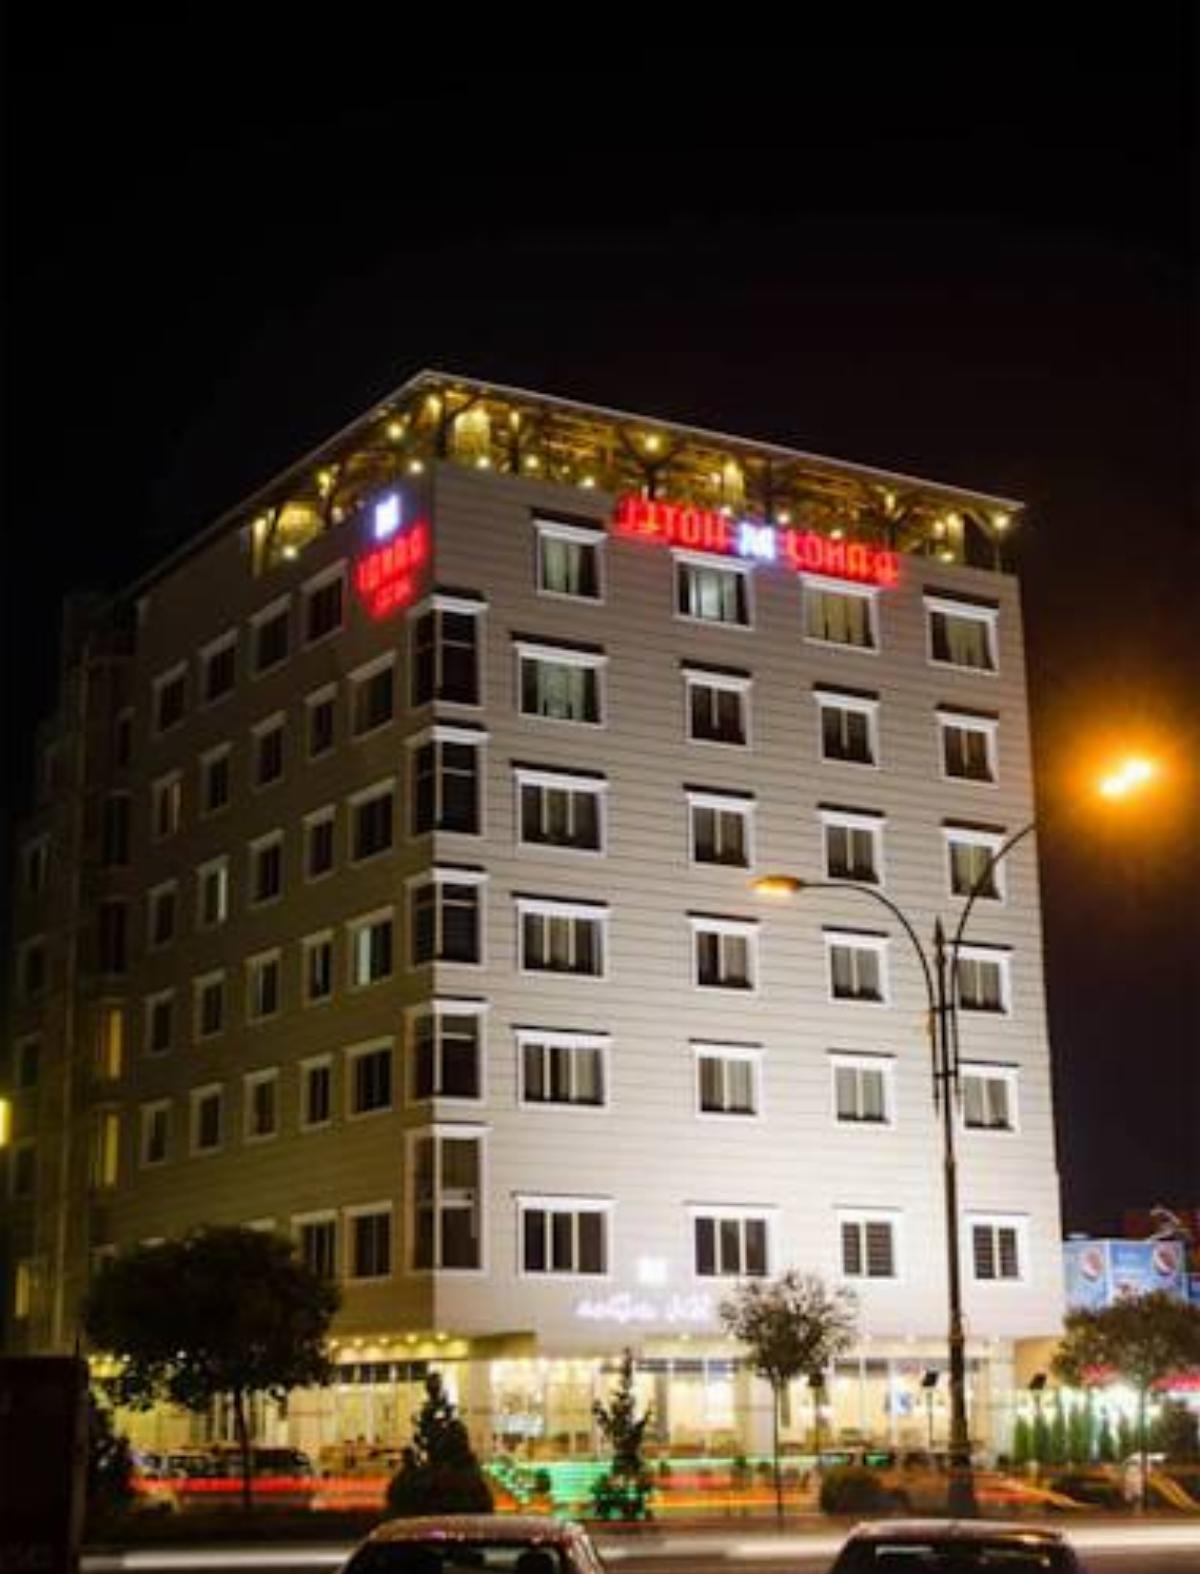 Banoj Hotel Hotel Erbil Iraq